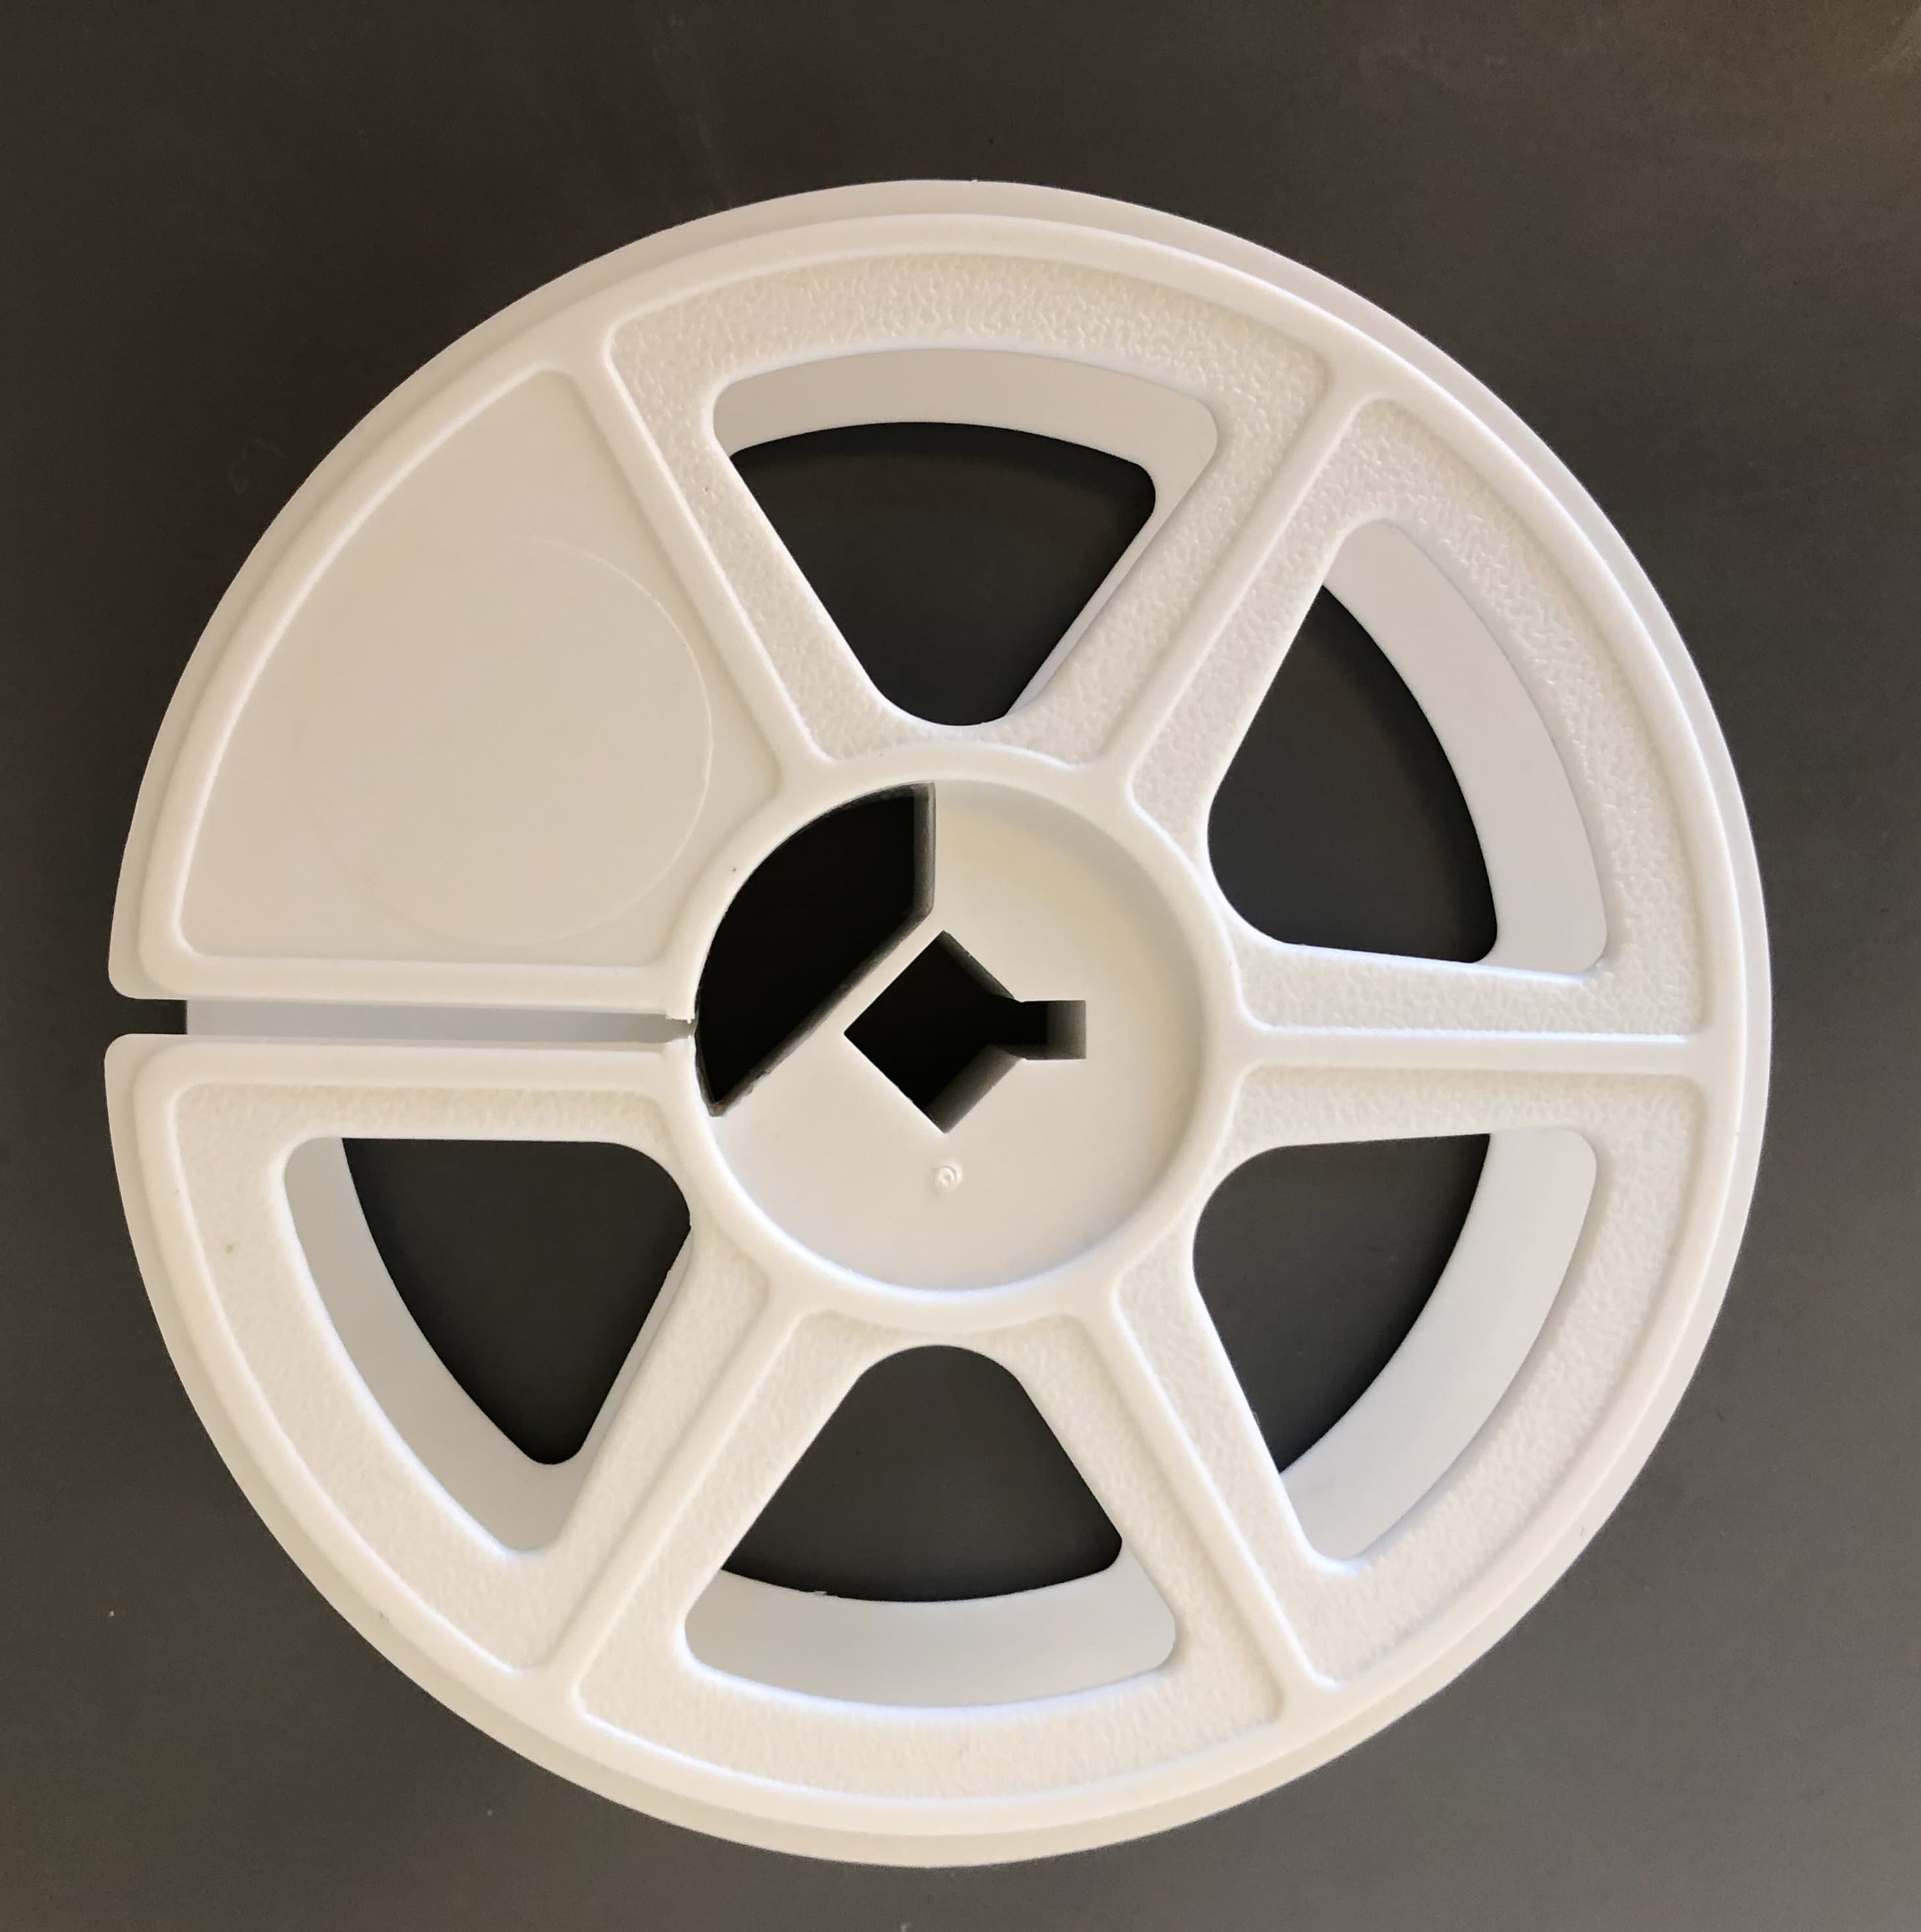 16mm Movie Film Reel - 400 ft. 7 in. : : DIY & Tools